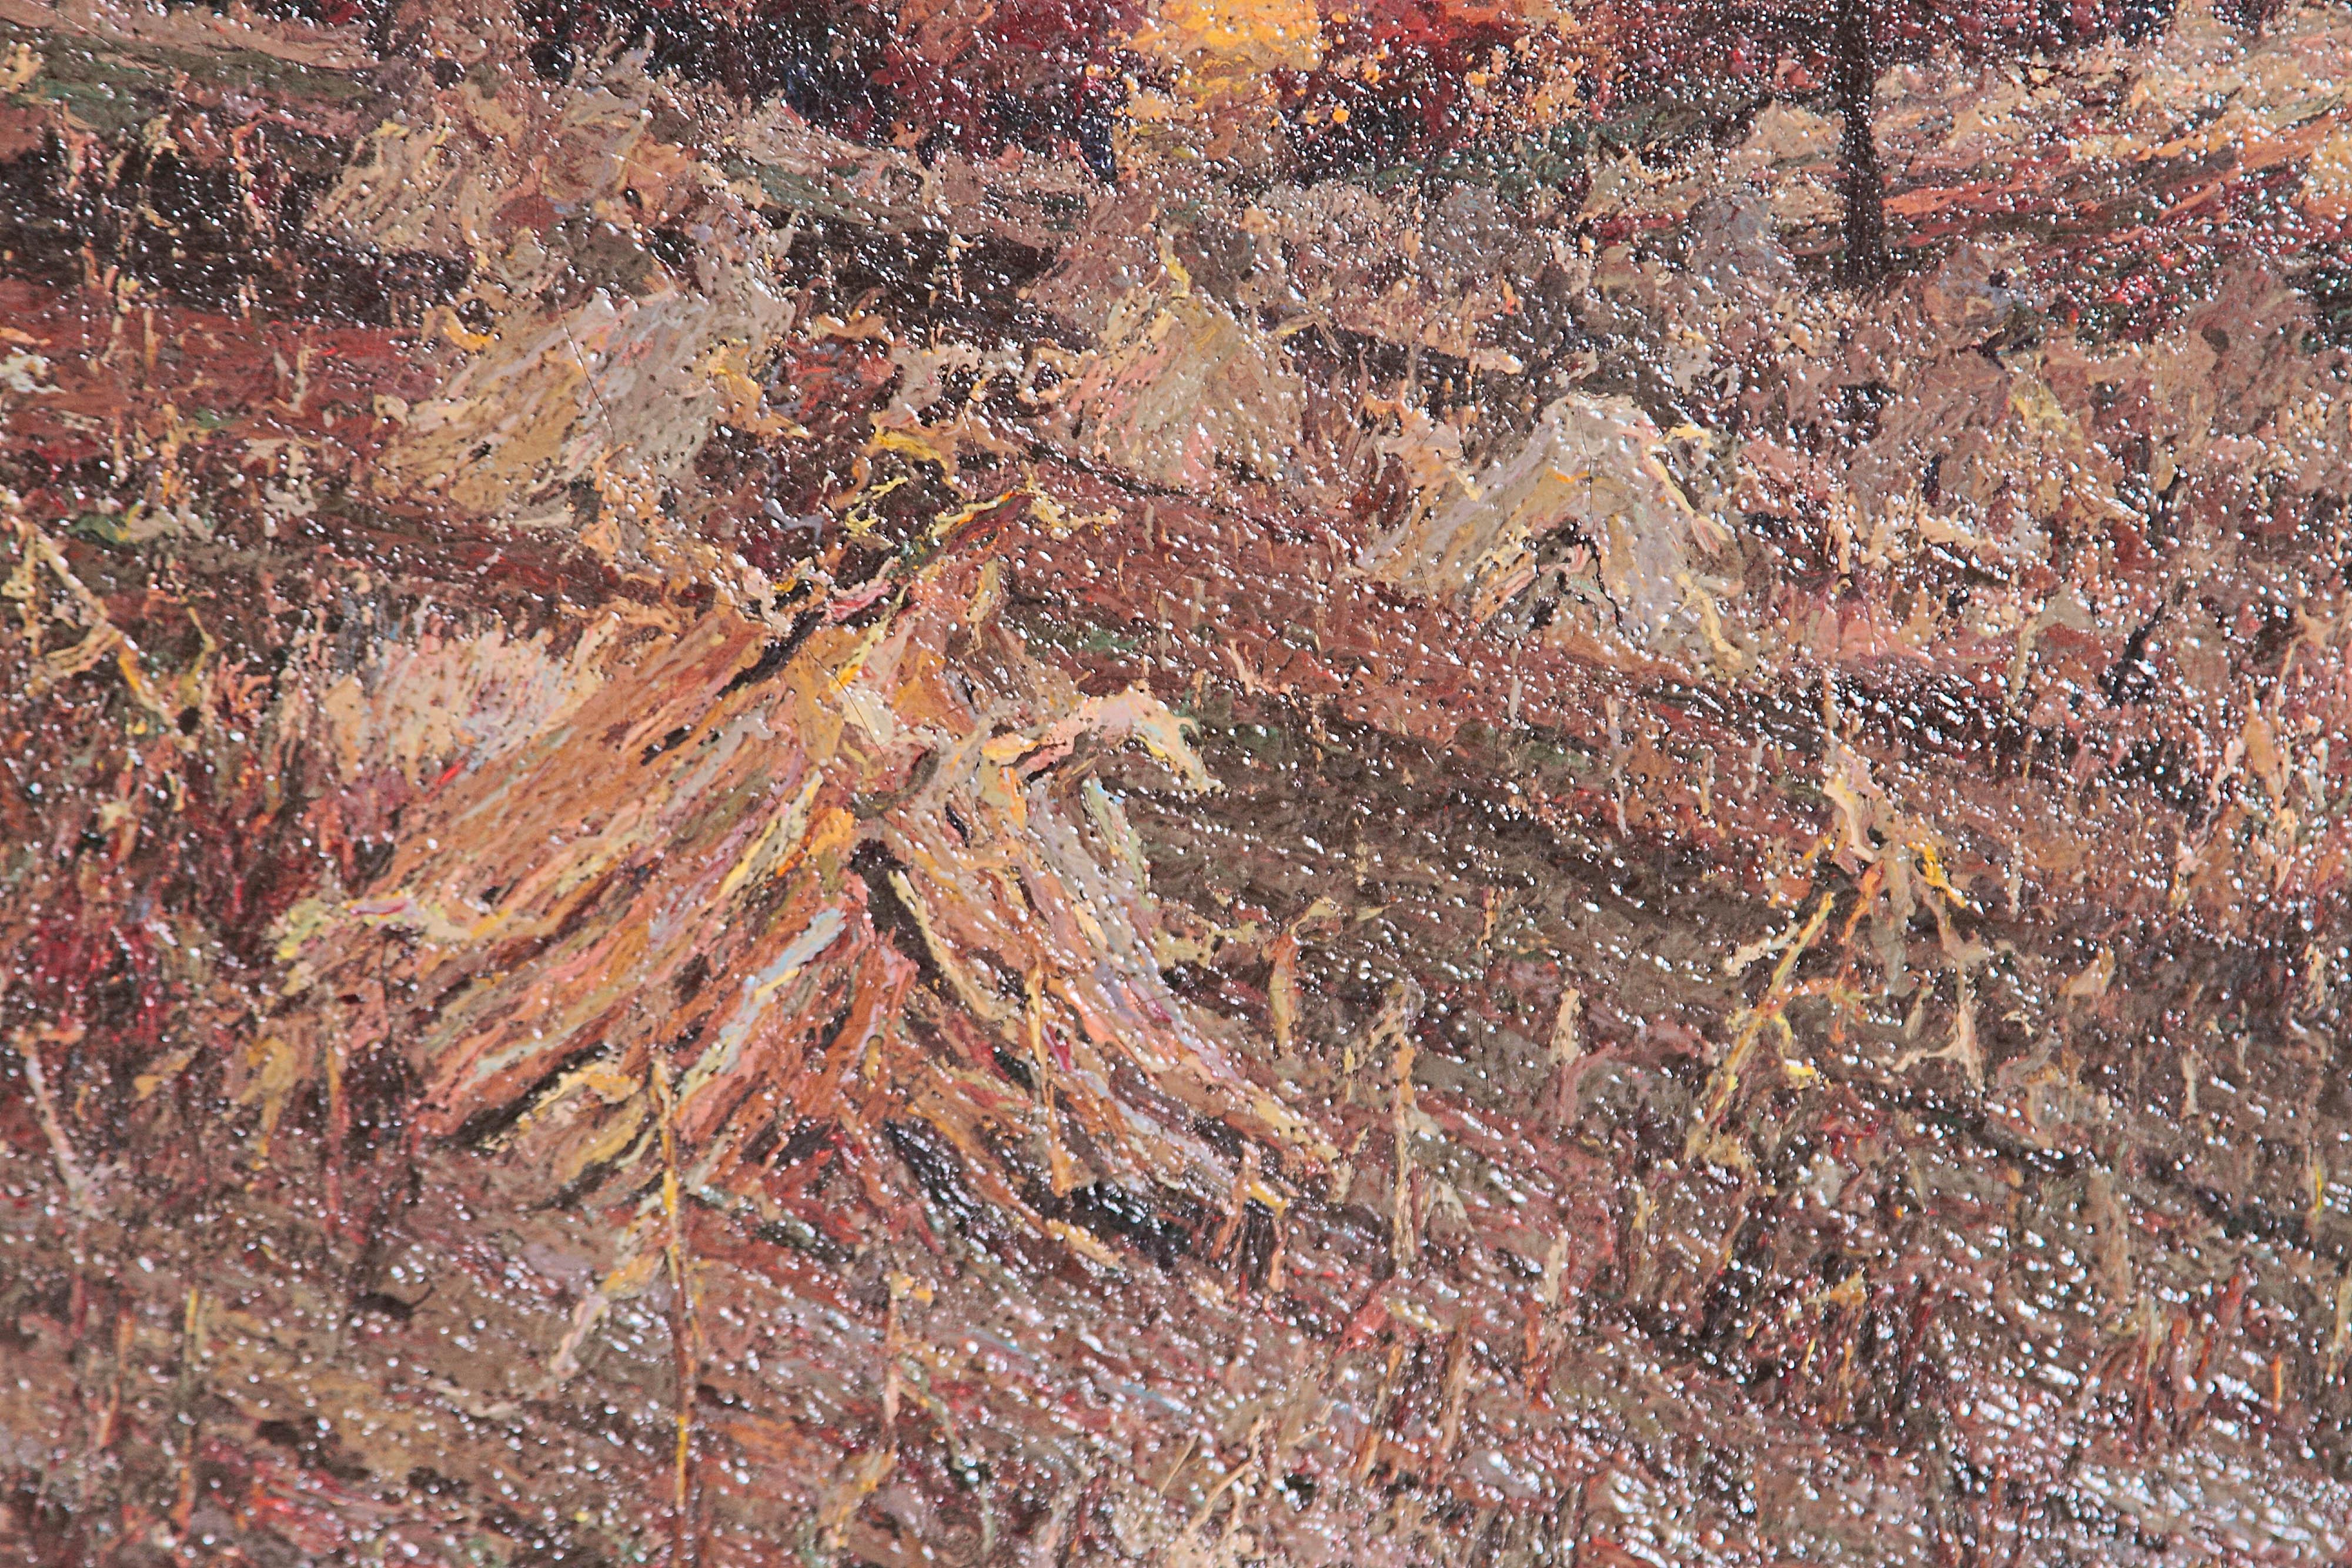 Une huile sur toile américaine magnifiquement peinte de manière réaliste d'un champ de foin. au premier plan et des arbres au loin. La technique de l'empâtement ajoute une touche impressionniste. circa 1880, par l'artiste américain Henry Charles